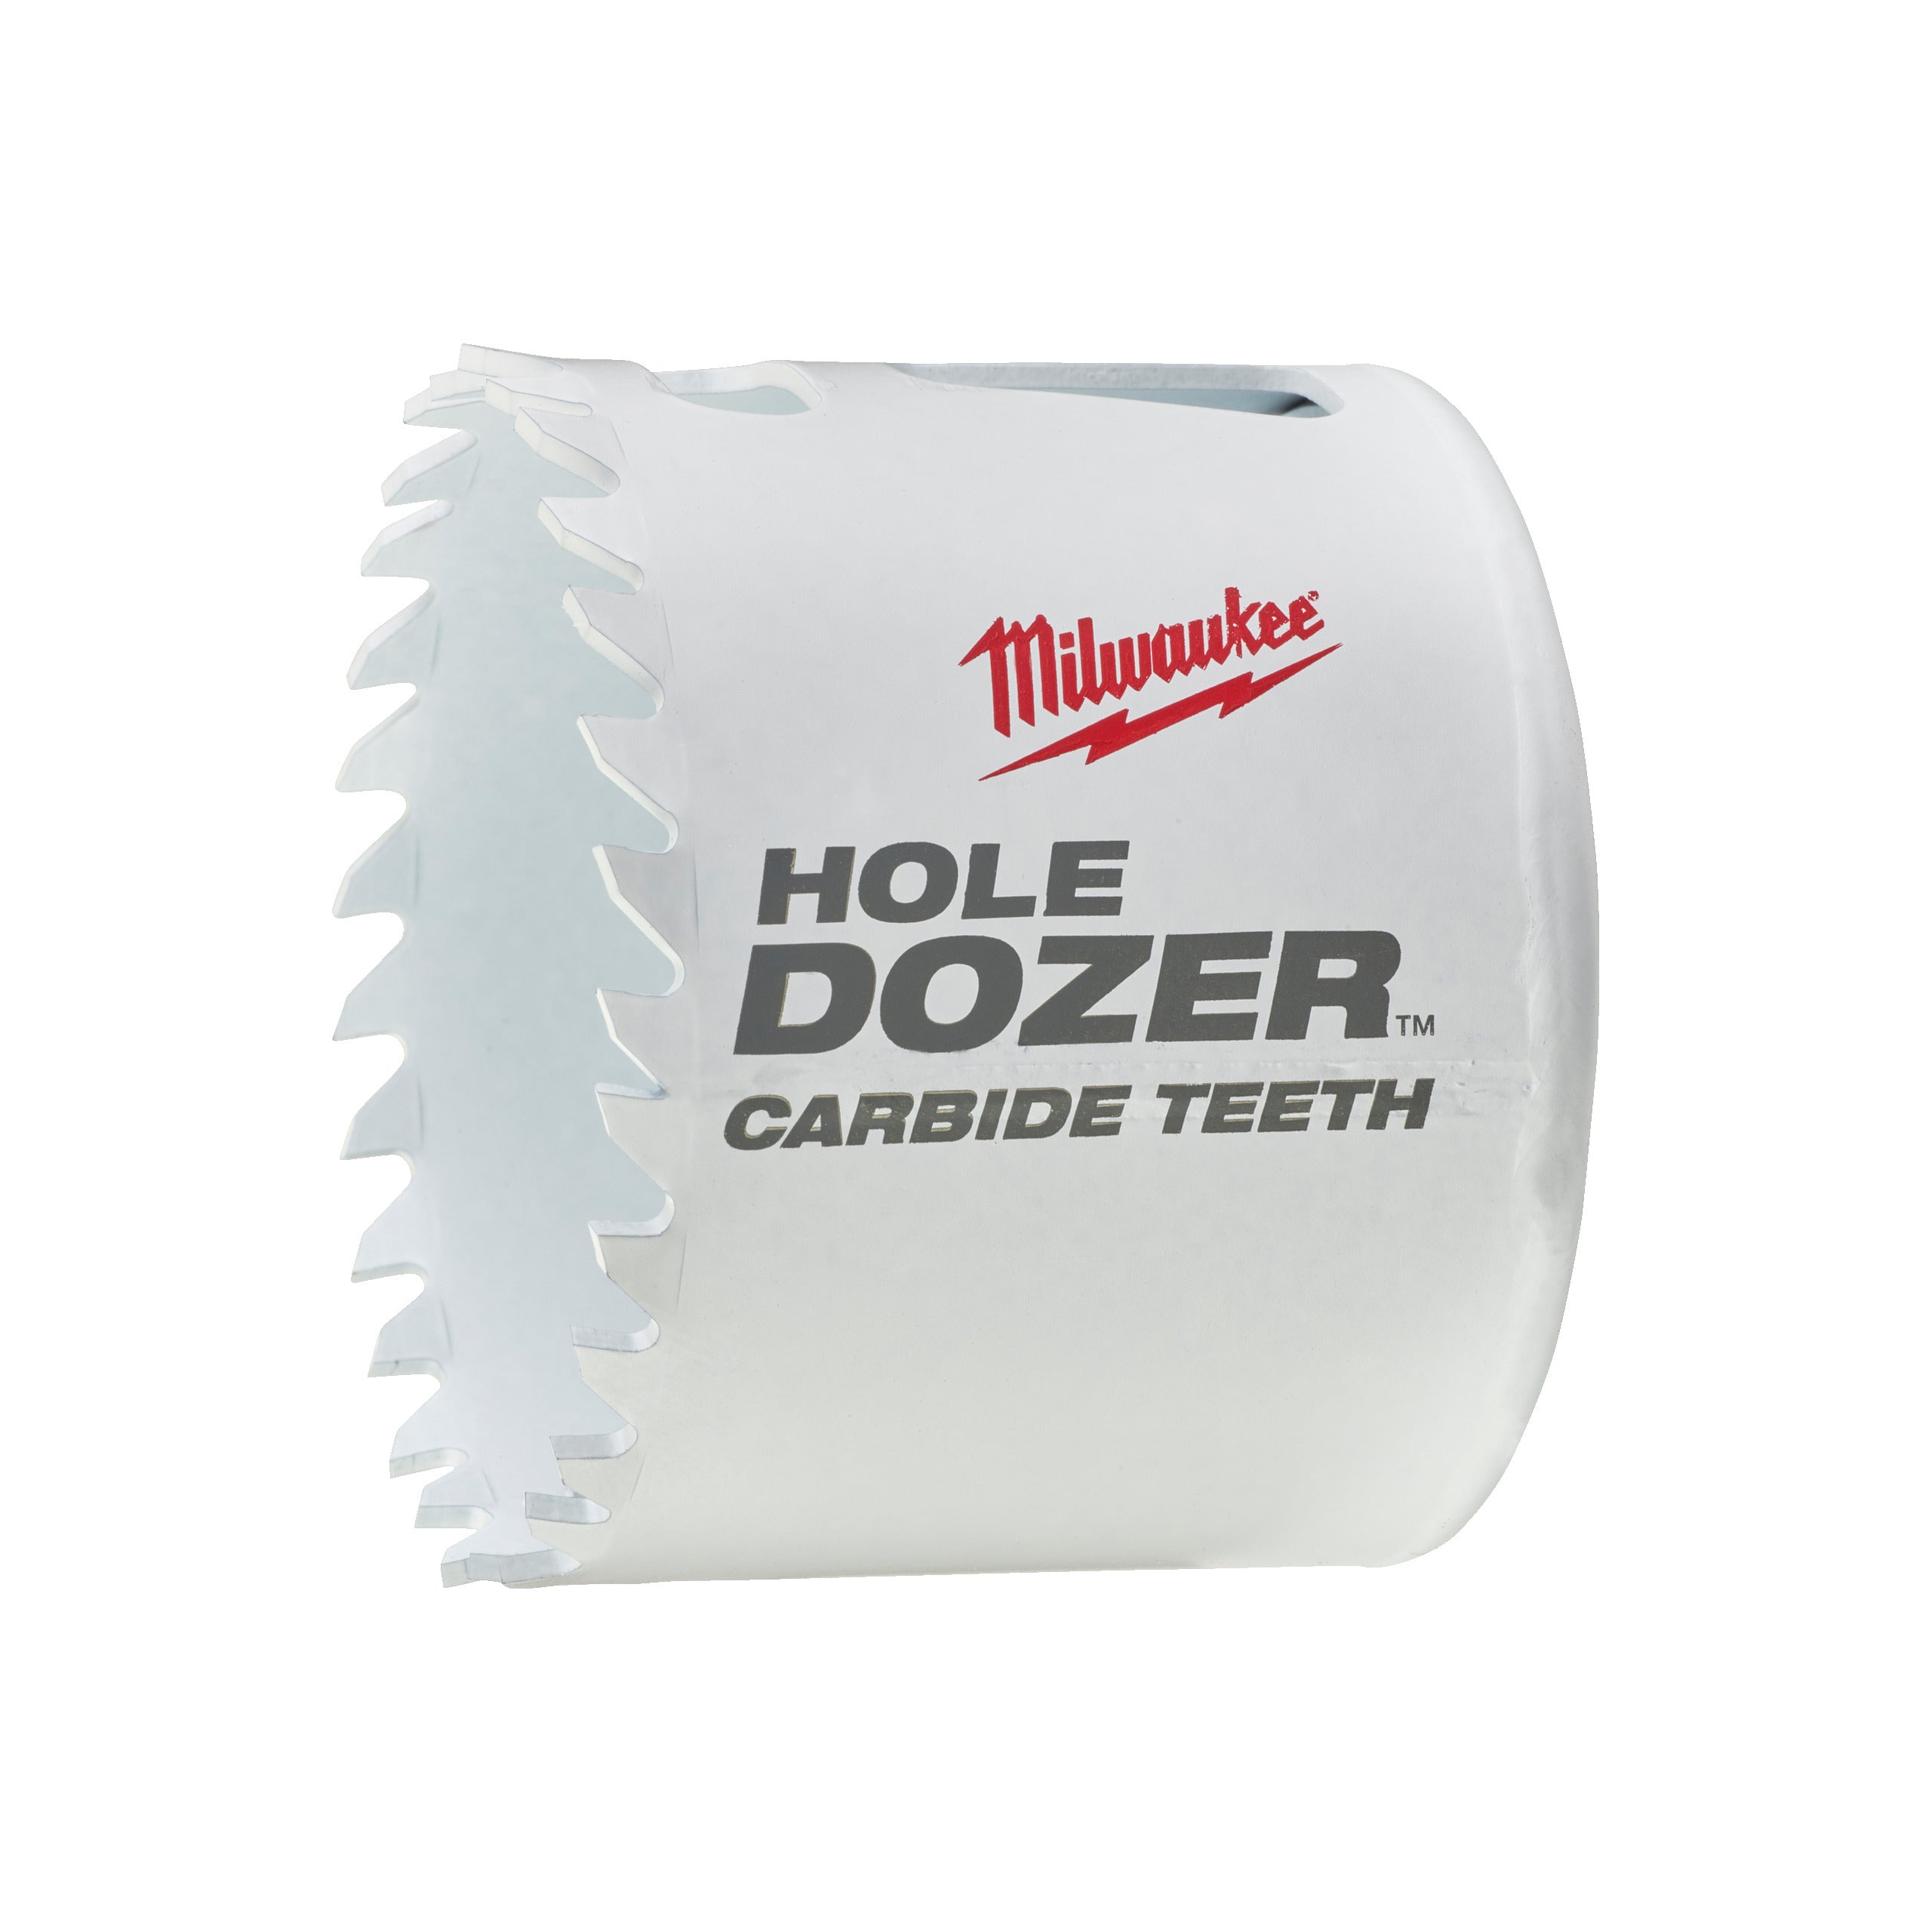 Carotă Milwaukee HOLE DOZER™ bi-metal cu dinți din carbură Ø60 mm 49560726